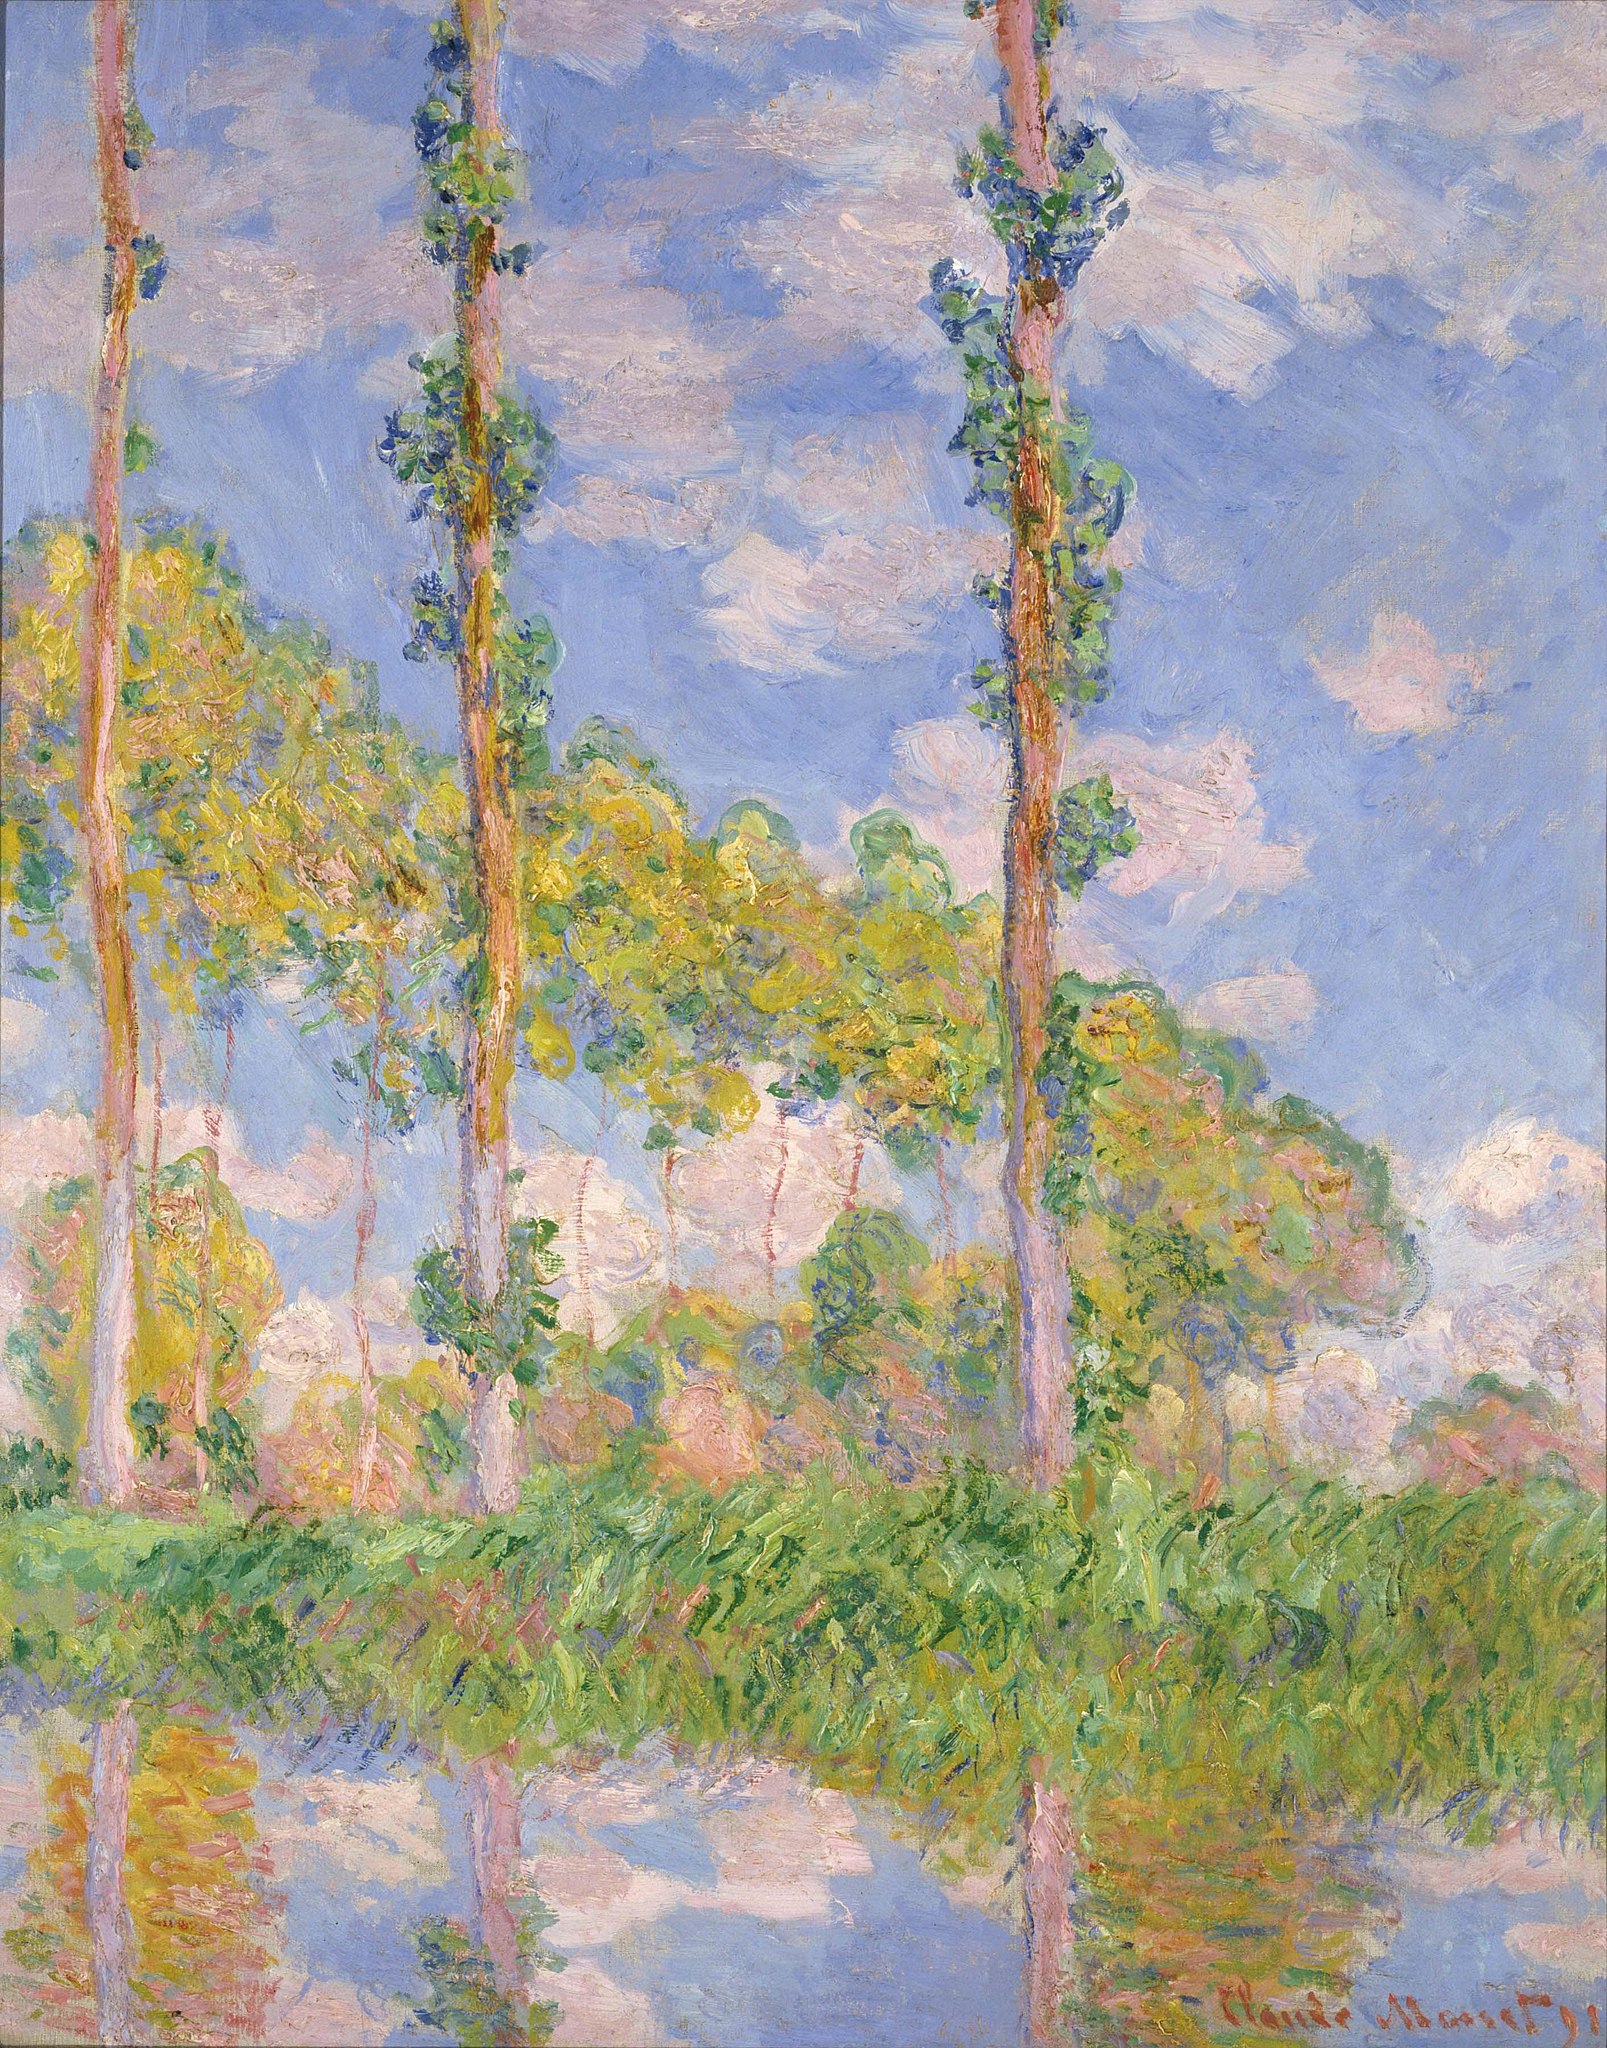 陽光下的白楊樹 by Claude Monet - 1891 年 - 35 x 93 釐米 